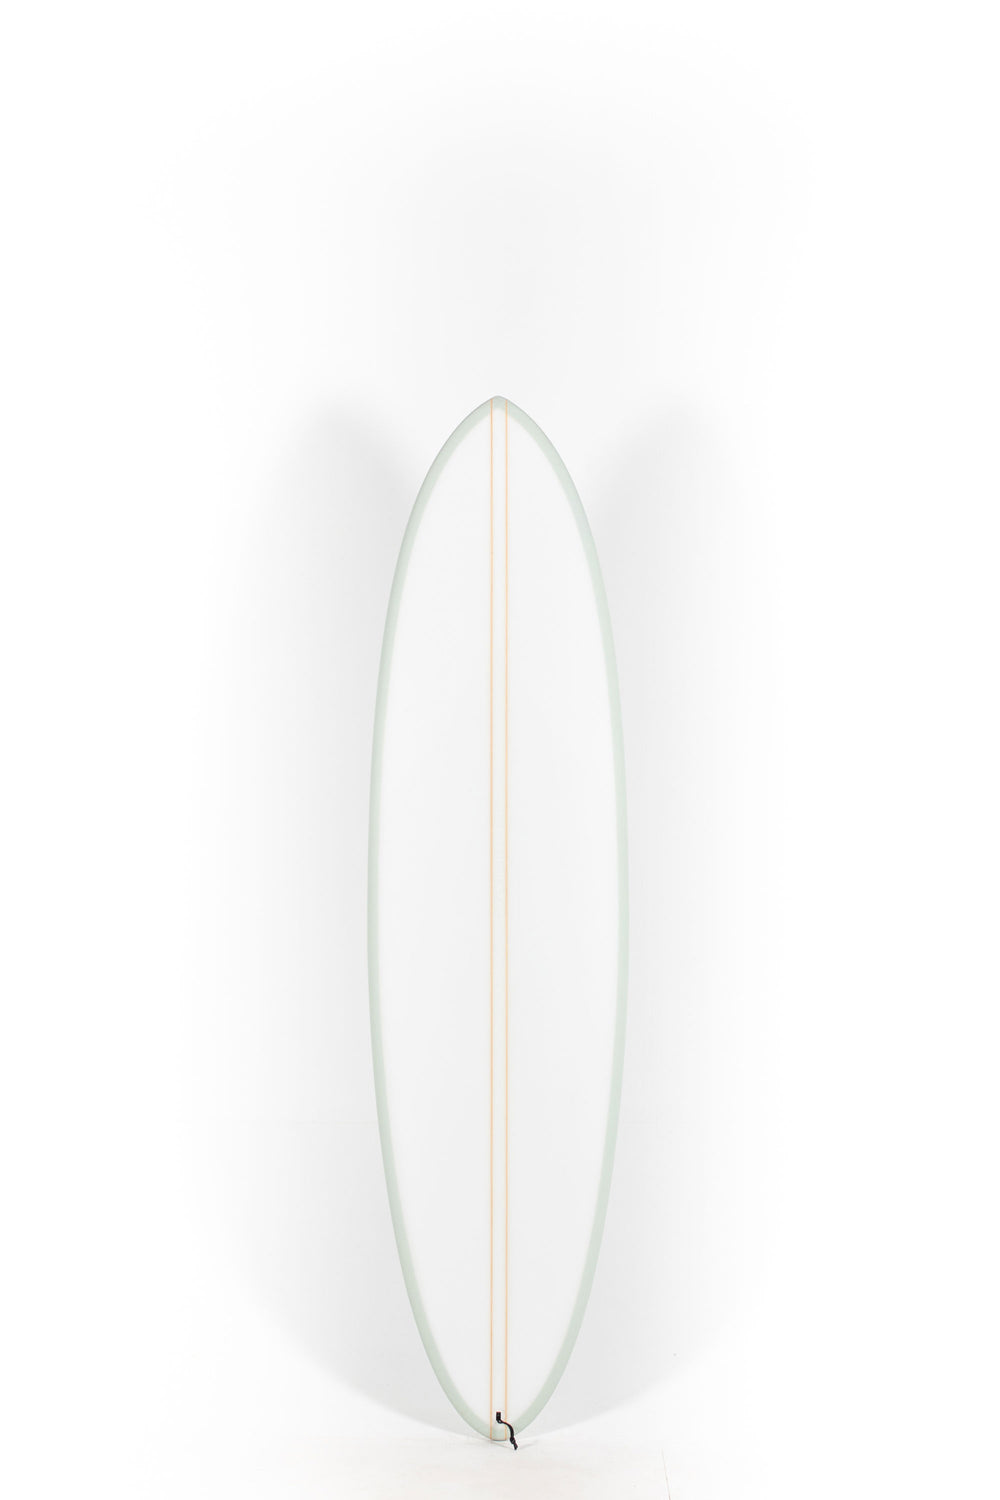 Pukas Surf Shop - HaydenShapes Surfboard - MID LENGTH GLIDER - BLU TILE - 6'10